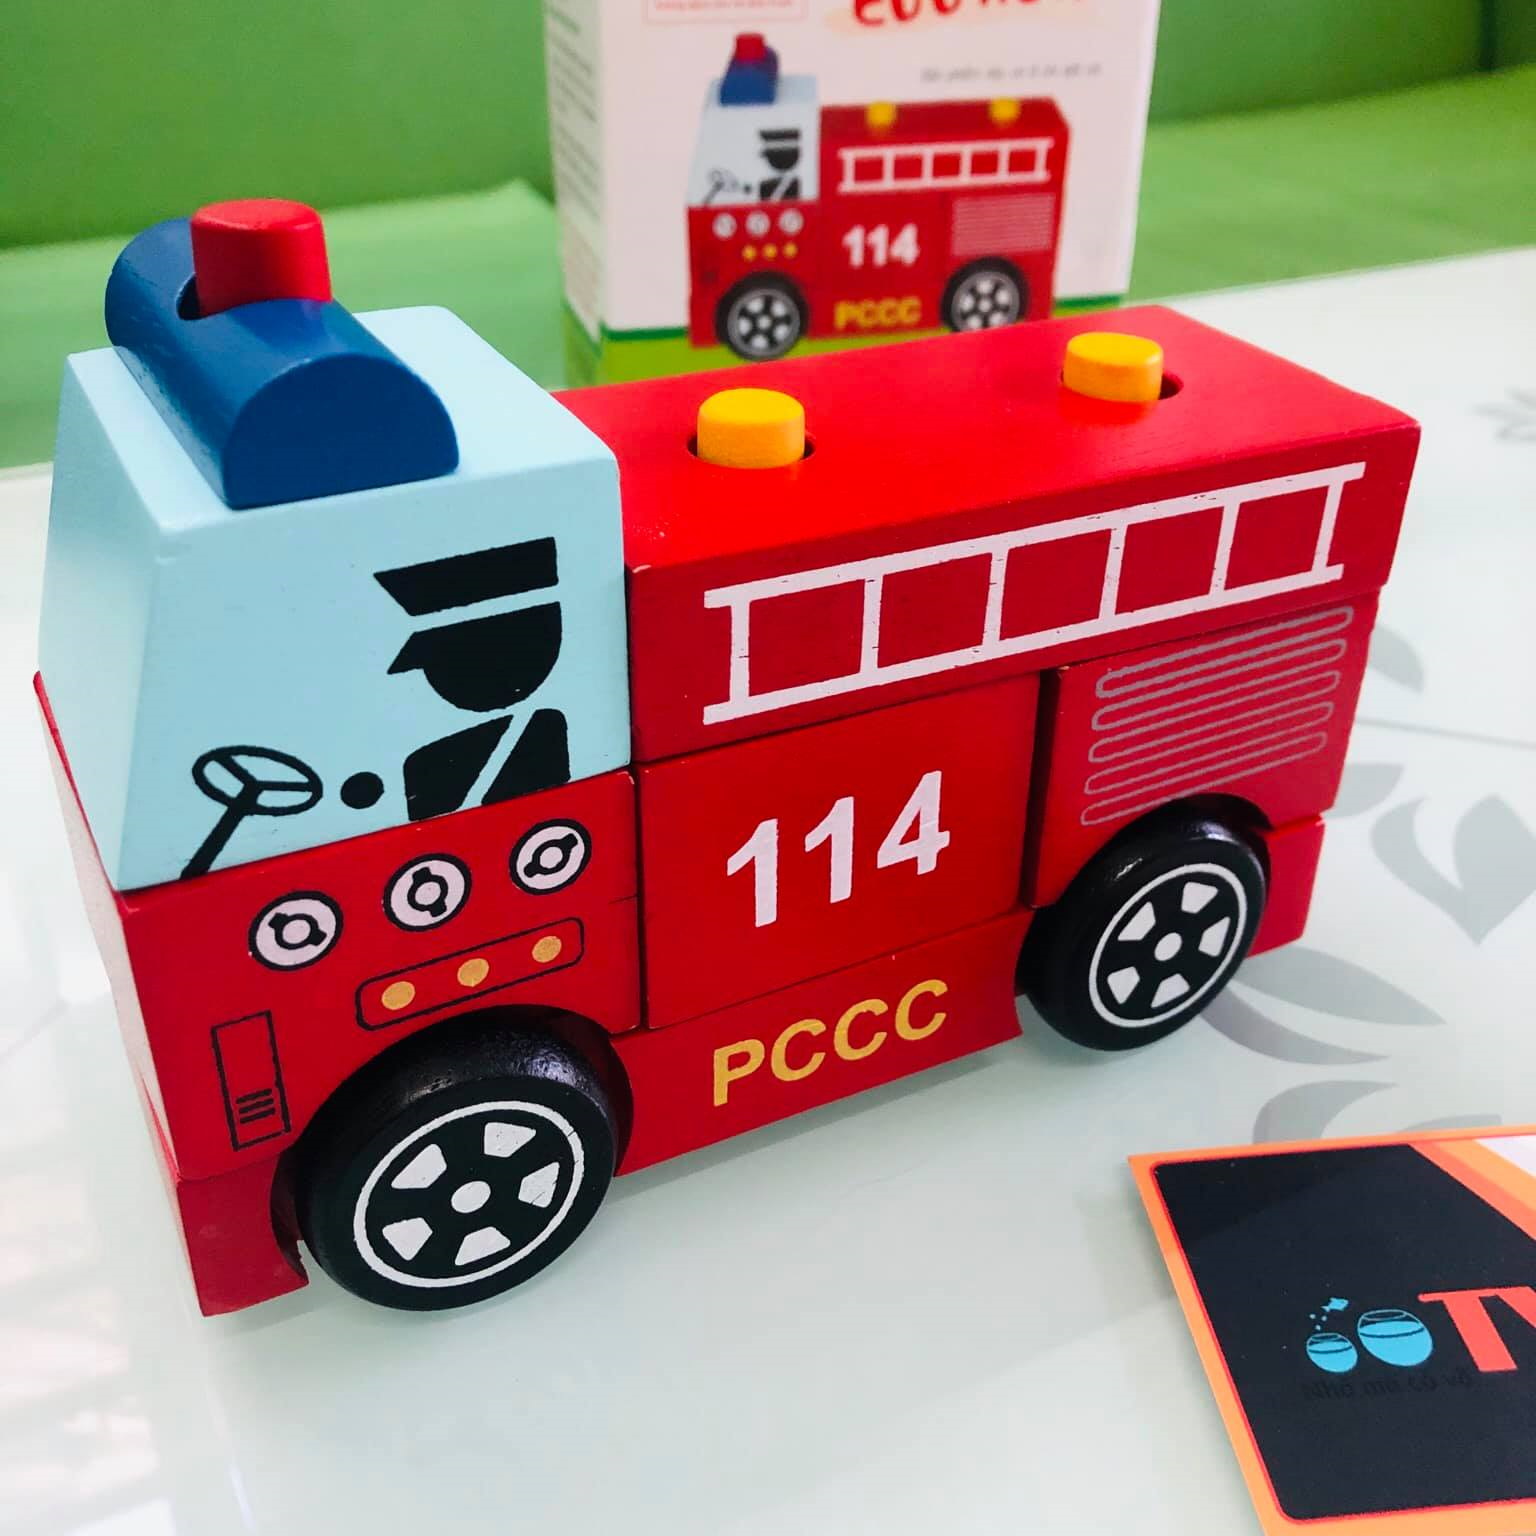 Xe cứu hộ giao thông là một trong những đồ chơi được các bé yêu thích và cũng giúp bé học tập về phương tiện giao thông. Hình ảnh về đồ chơi lắp ráp xe gỗ này sẽ mang đến cho bé những giờ phút thư giãn và giúp bé phát triển tư duy một cách tích cực.